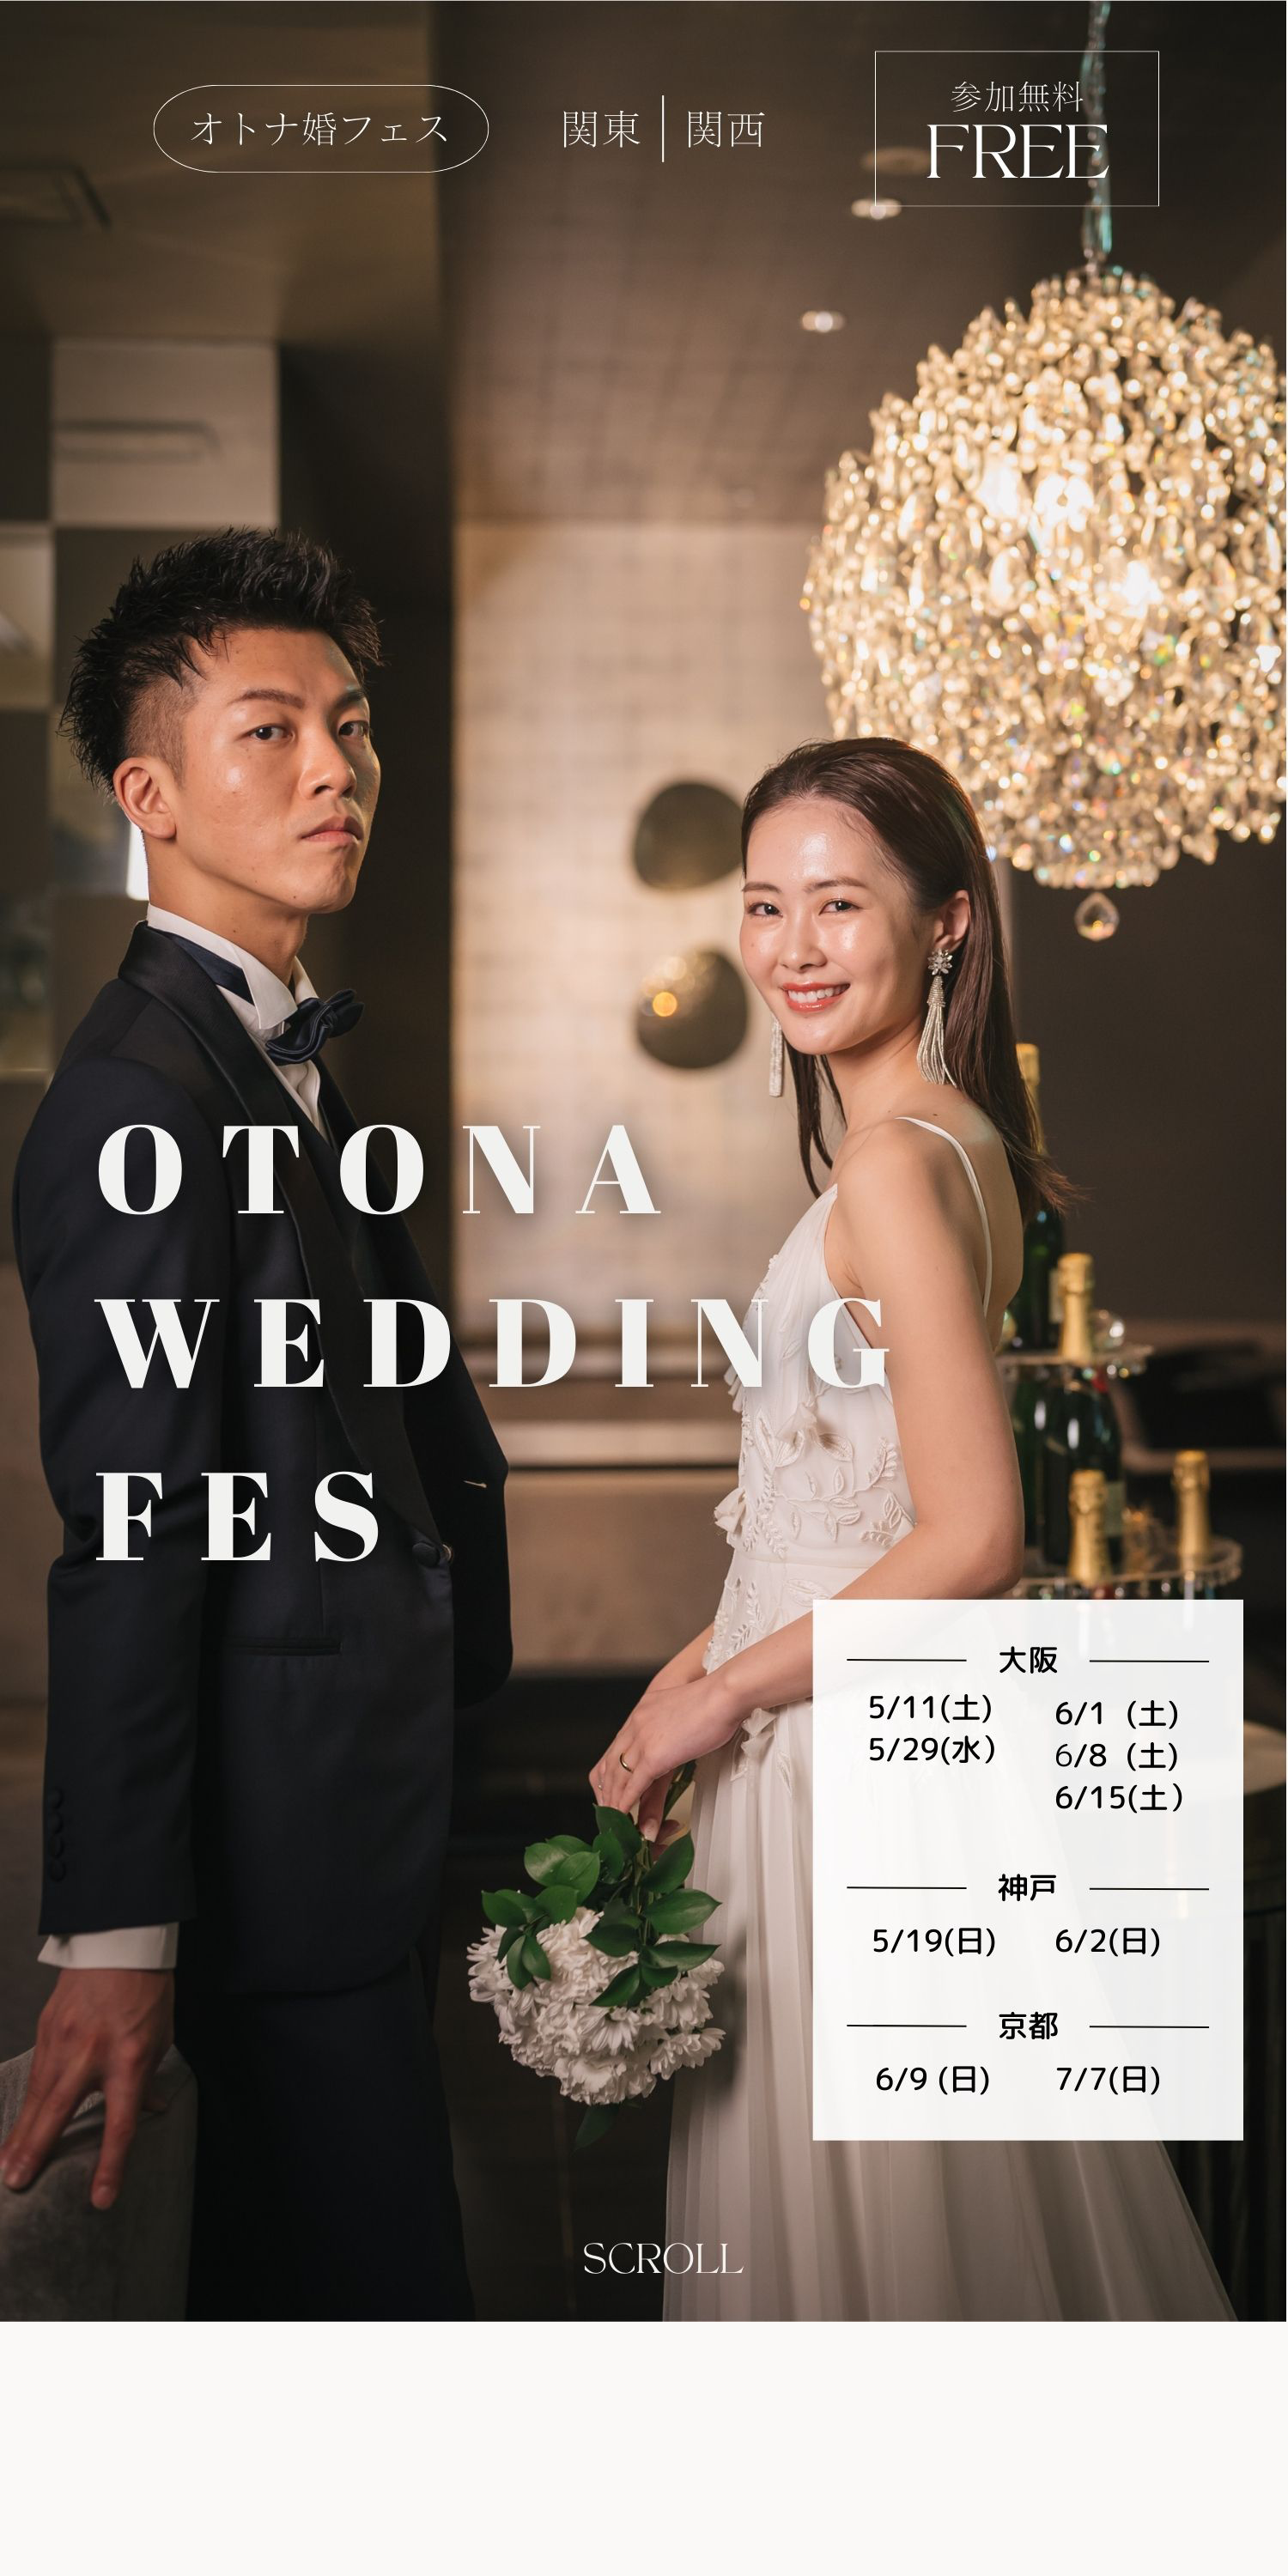 オトナ婚フェス - 結婚式場探しの為の体験型ウエディングイベント